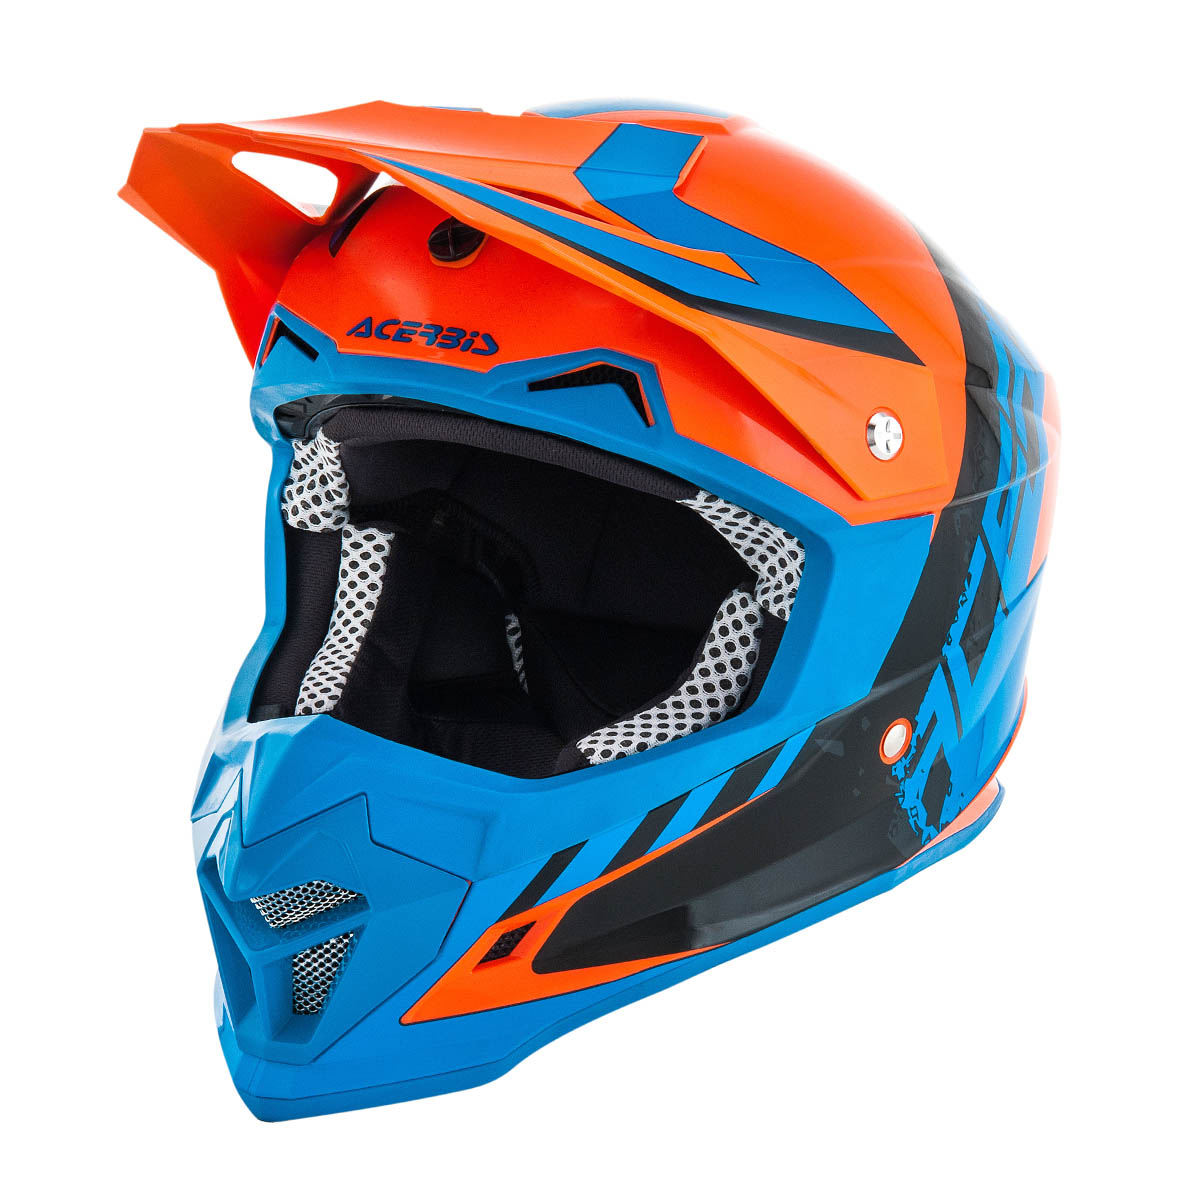 Acerbis Helm Profile 4 Fluo Orange/Blau